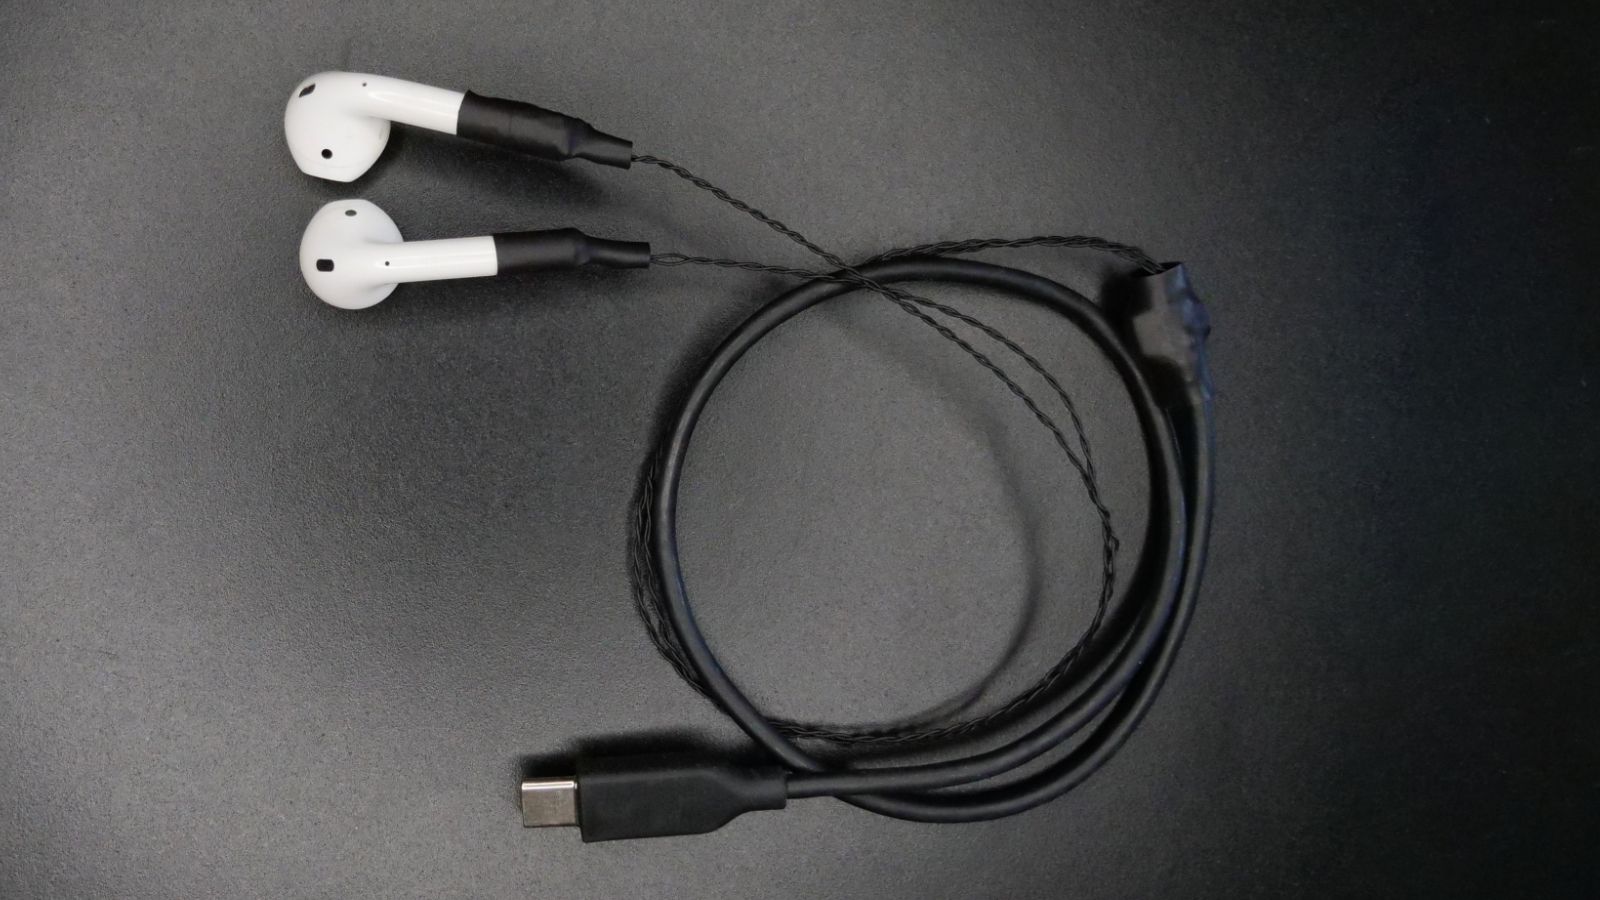 Ingeniero trae cables y conector USB-C a AirPods